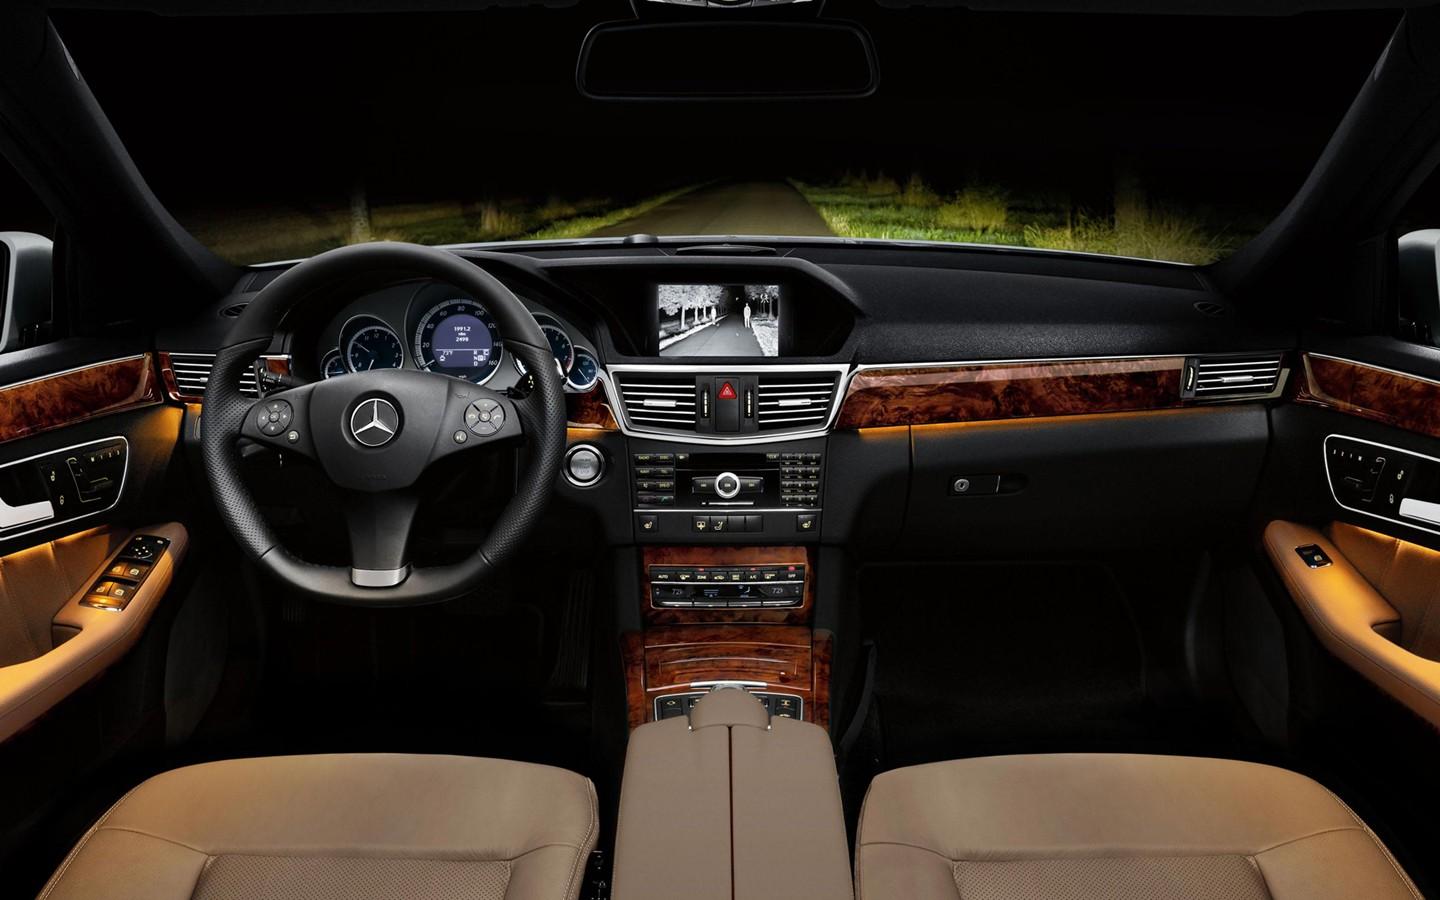 The New Mercedes Benz E Class Saloon Wallpaper 31986